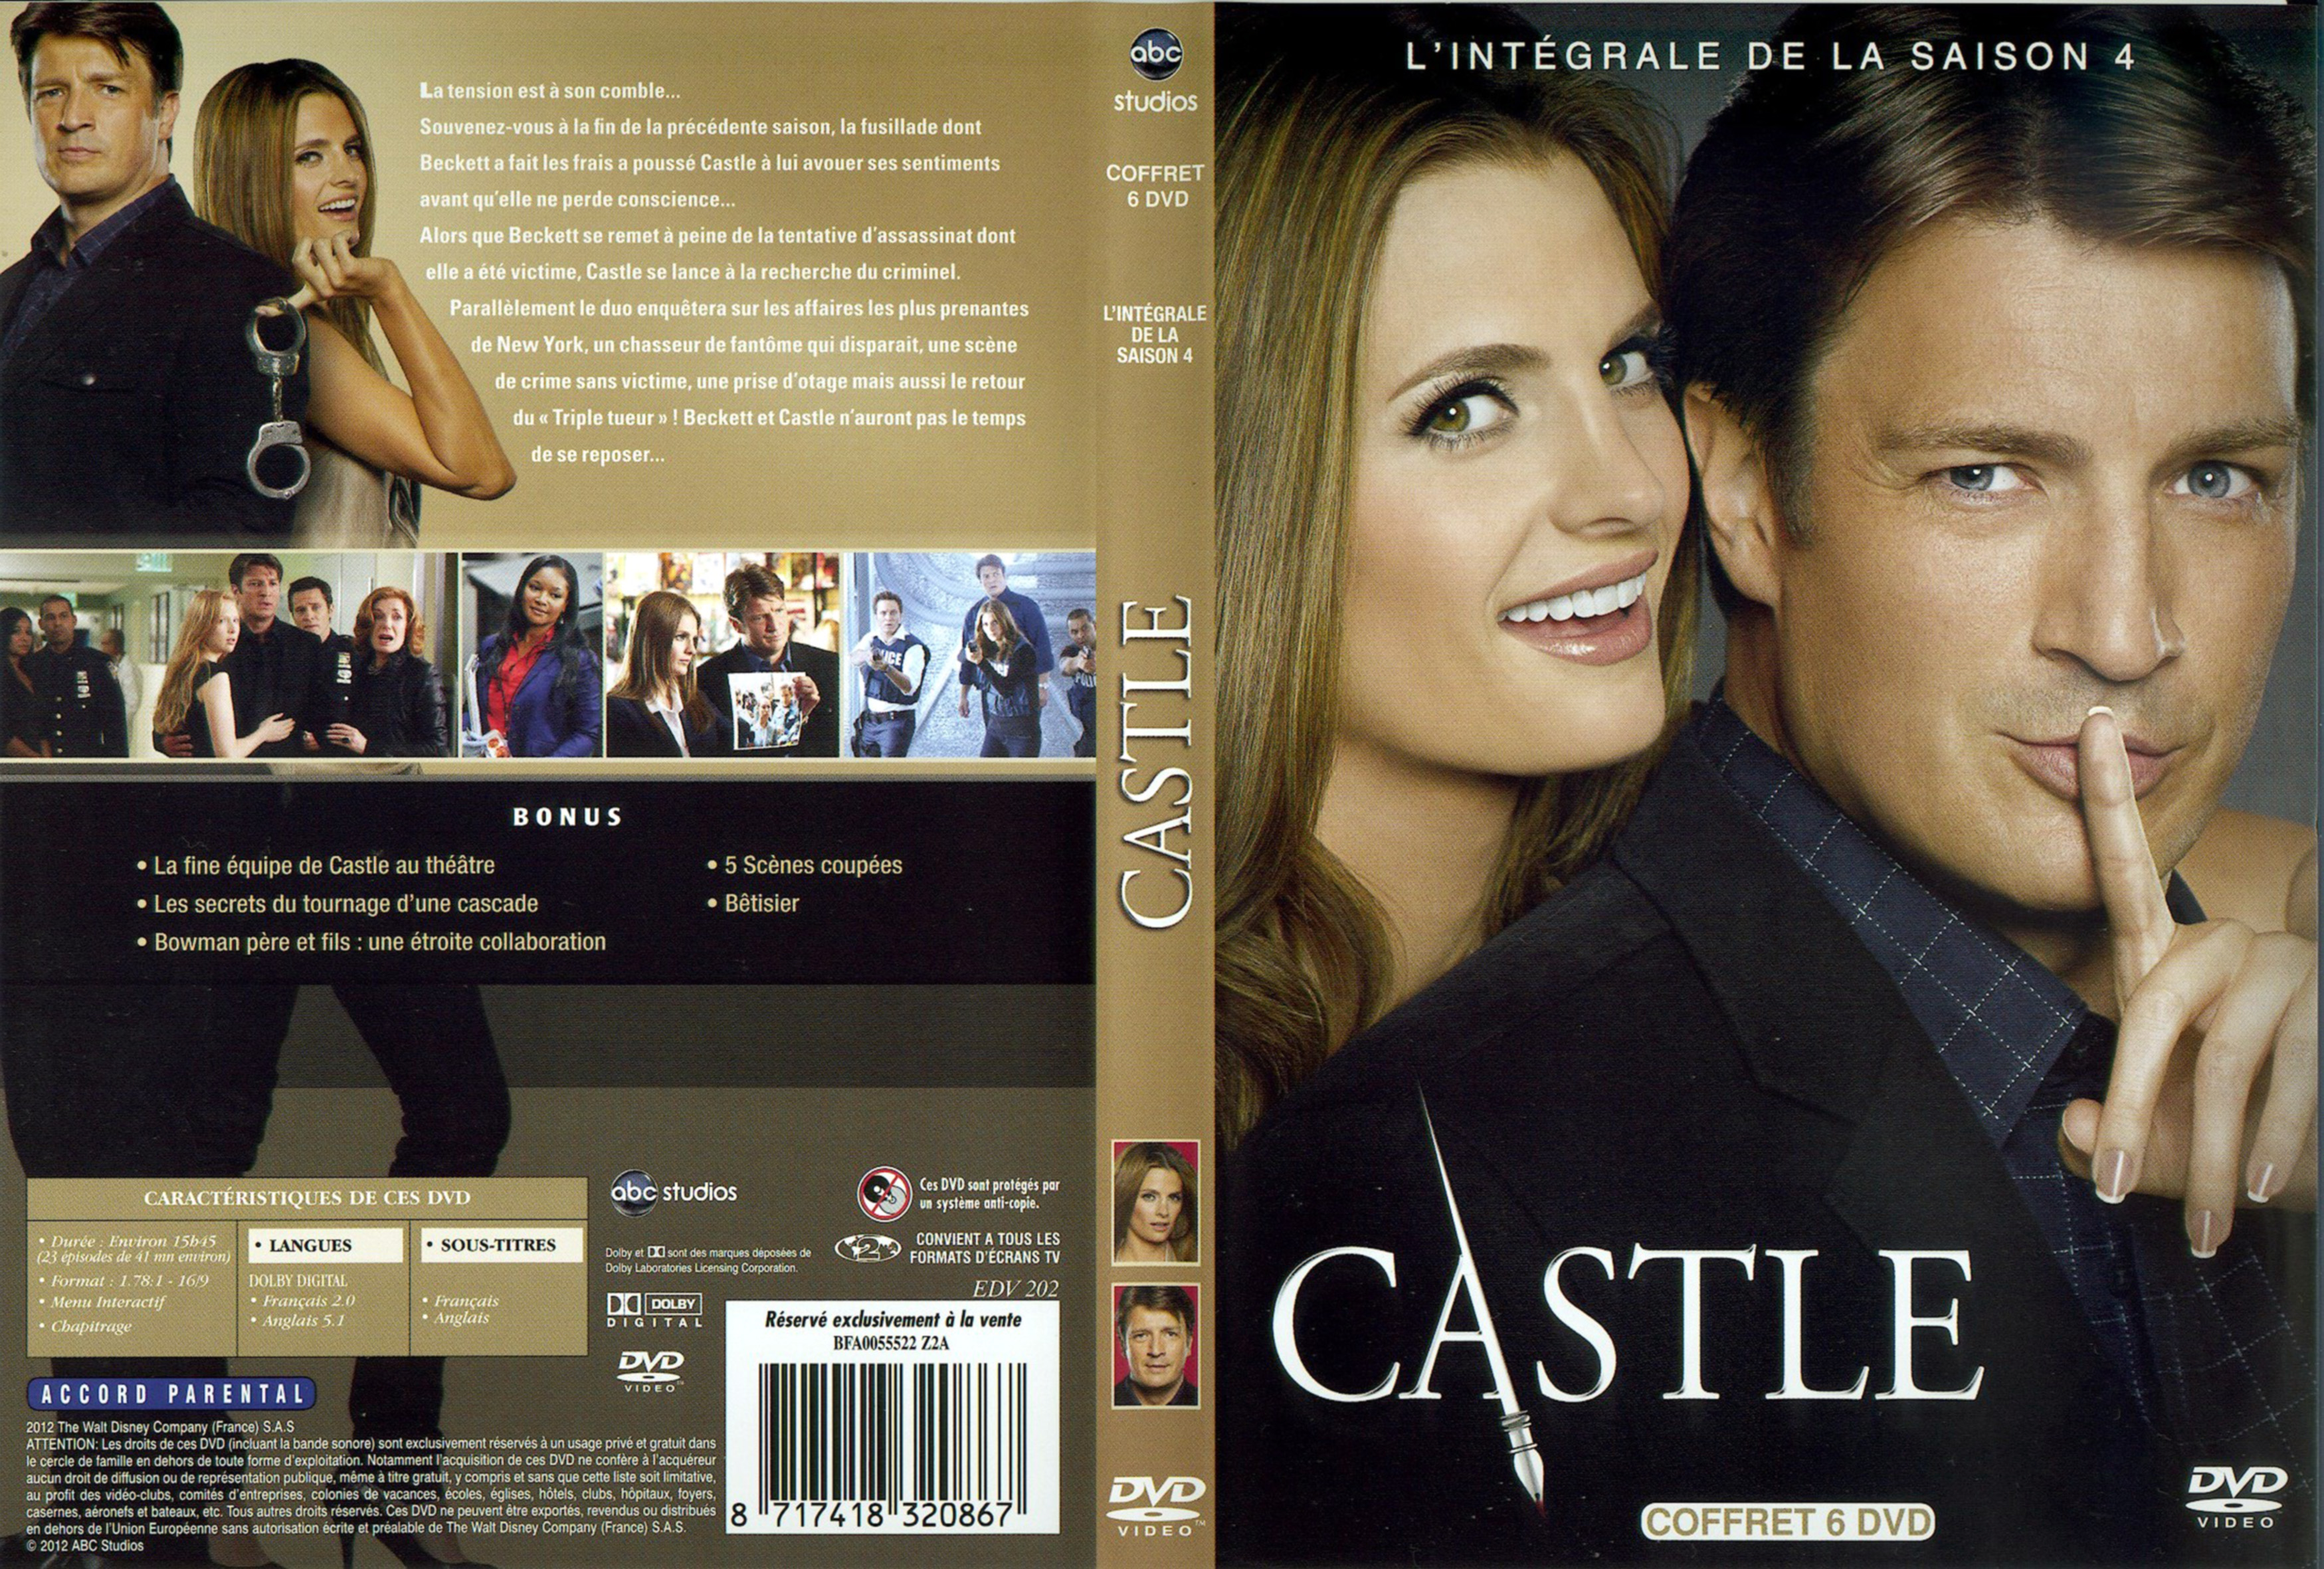 Jaquette DVD Castle saison 4 COFFRET